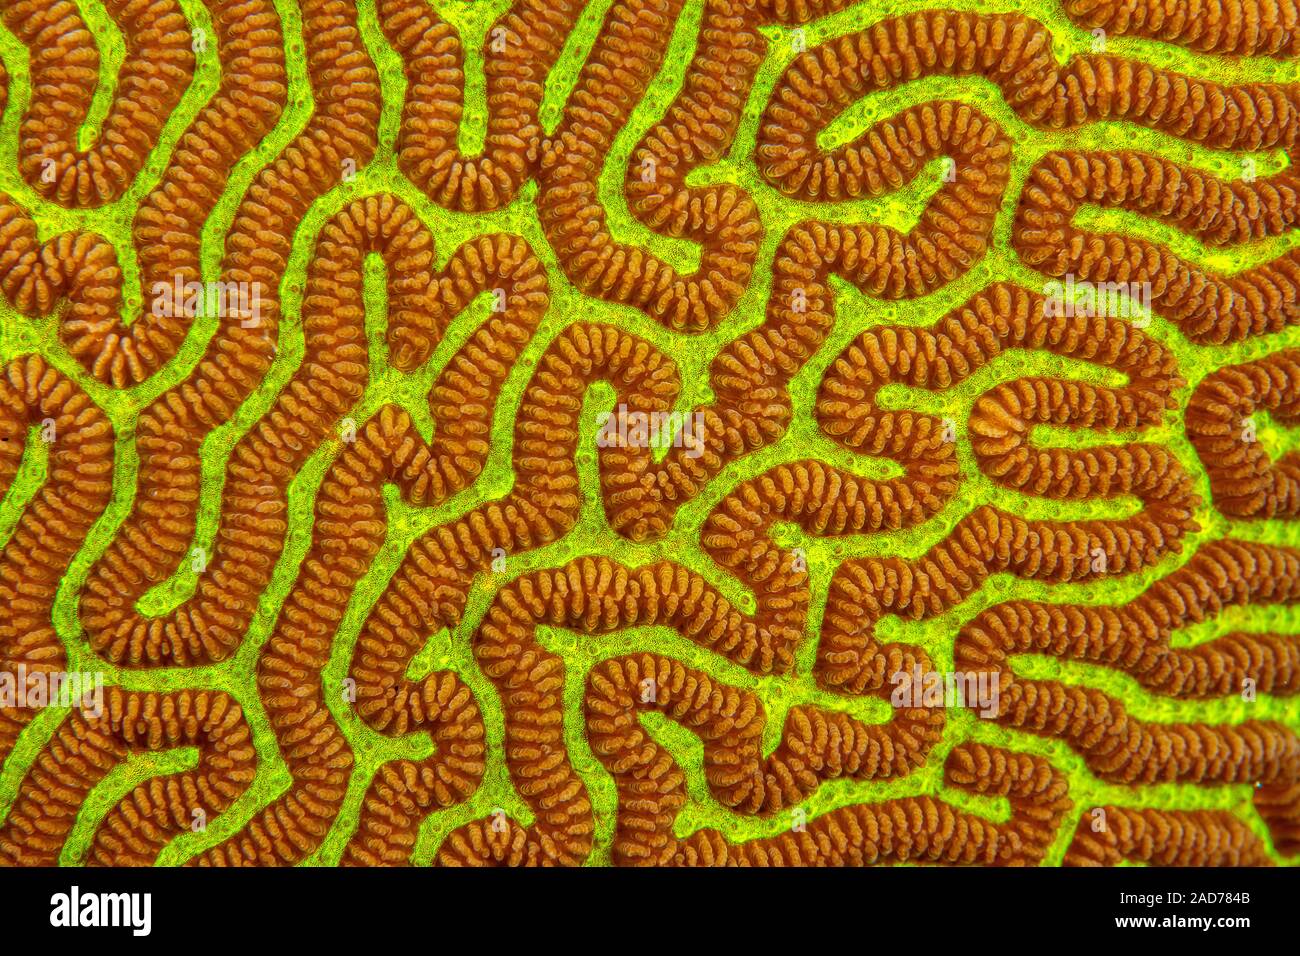 Uno sguardo più da vicino al dettaglio del cervello di corallo, Platygyra sinensis, durante il giorno con il suo polipi chiuso, Yap, Micronesia. Foto Stock